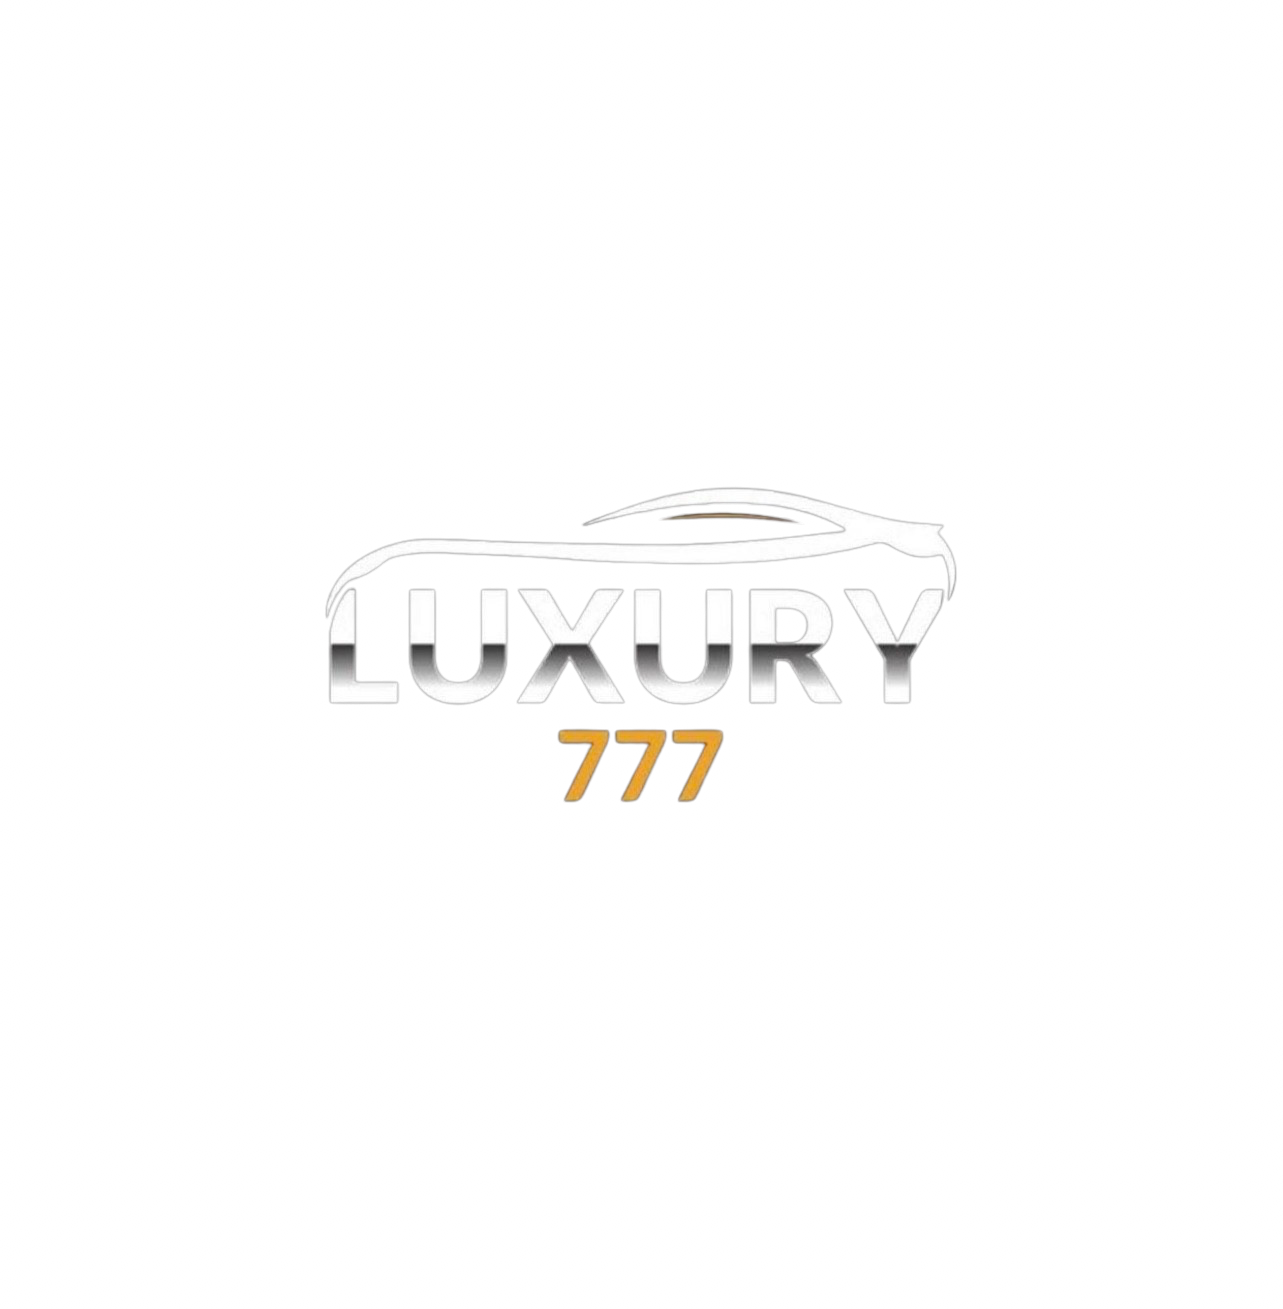 Luxury777